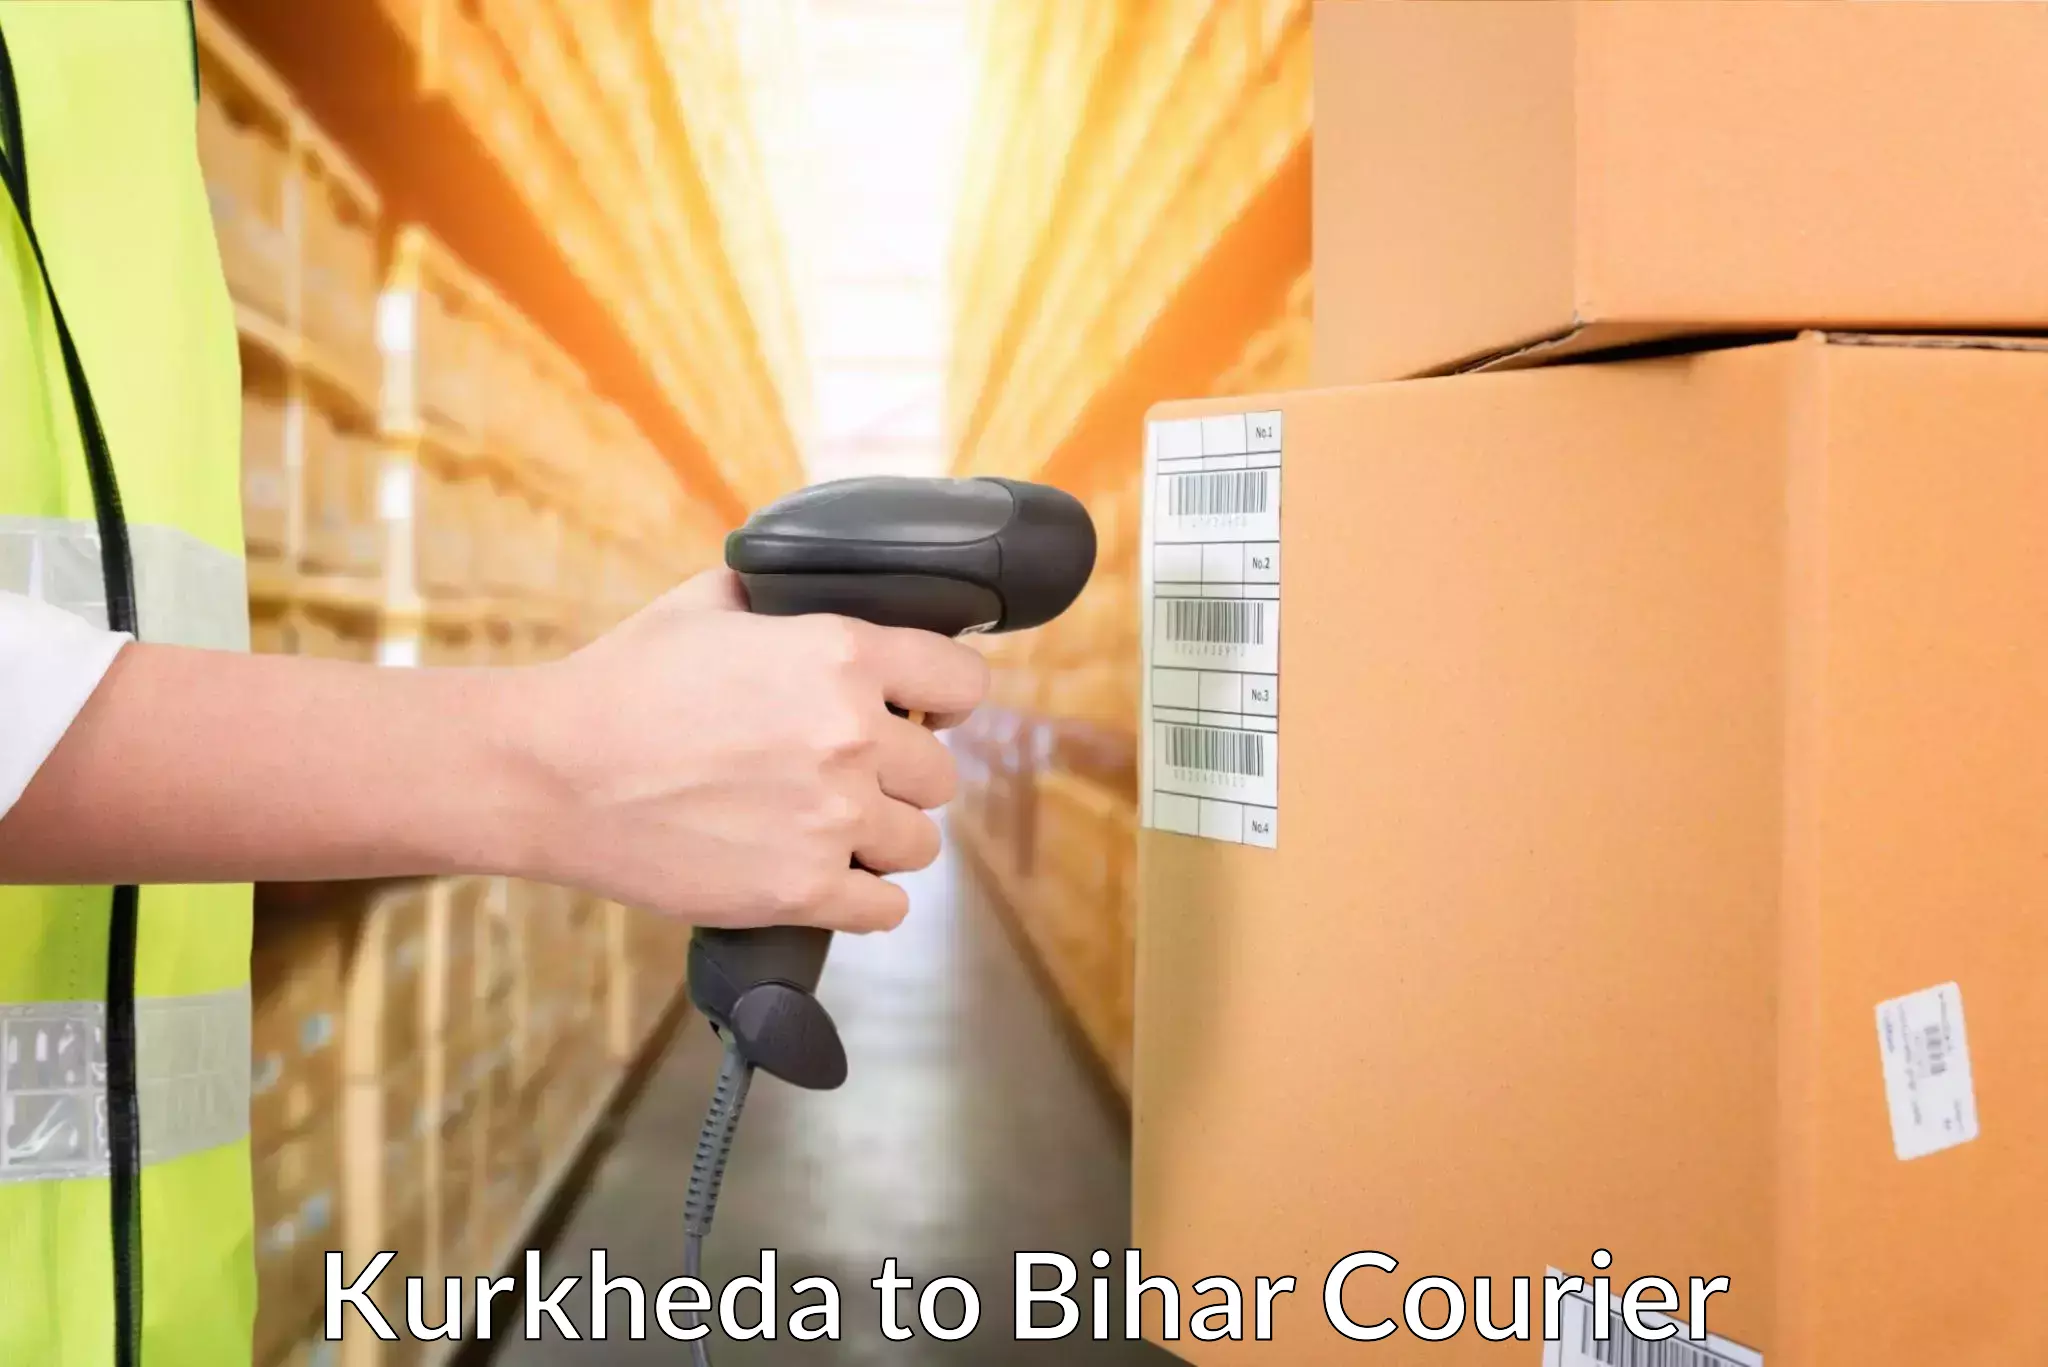 Doorstep delivery service Kurkheda to Aurangabad Bihar